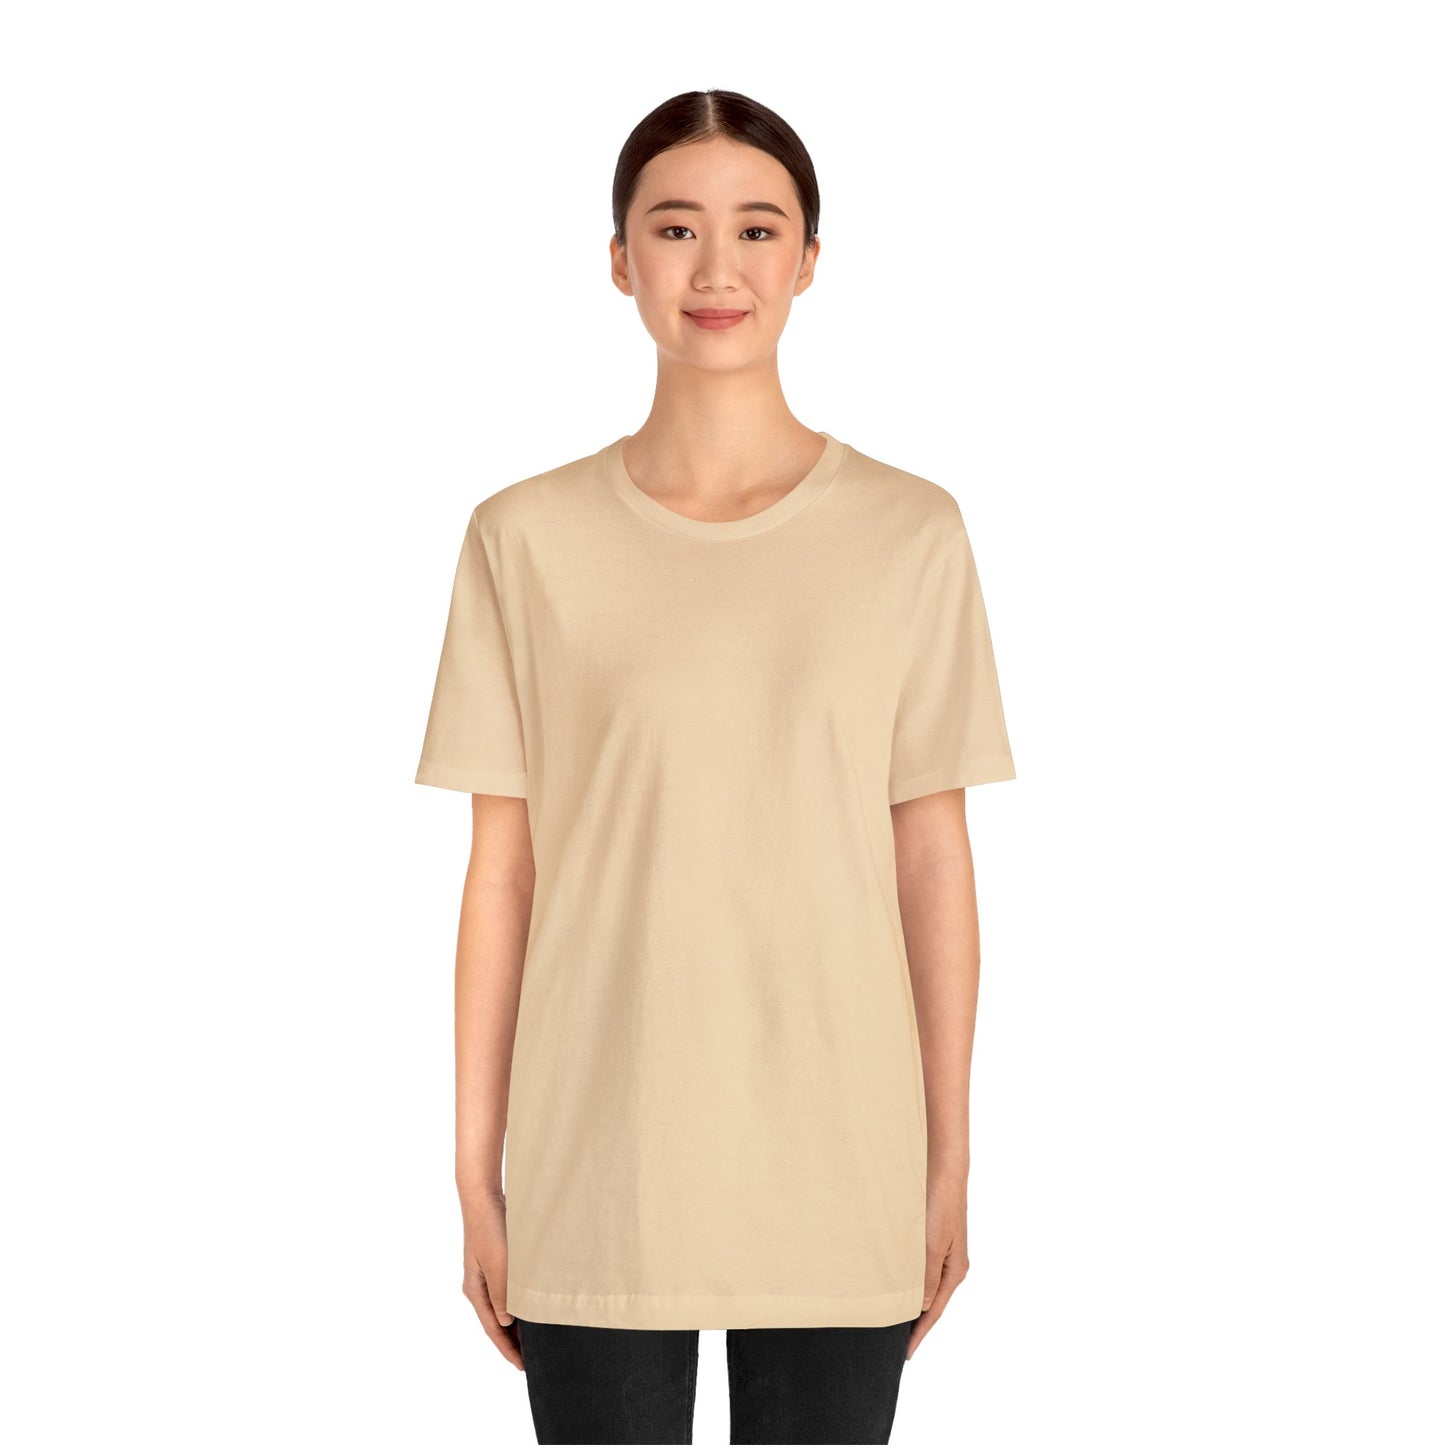 Unisex Jersey Short Sleeve Soft Cream T Shirt